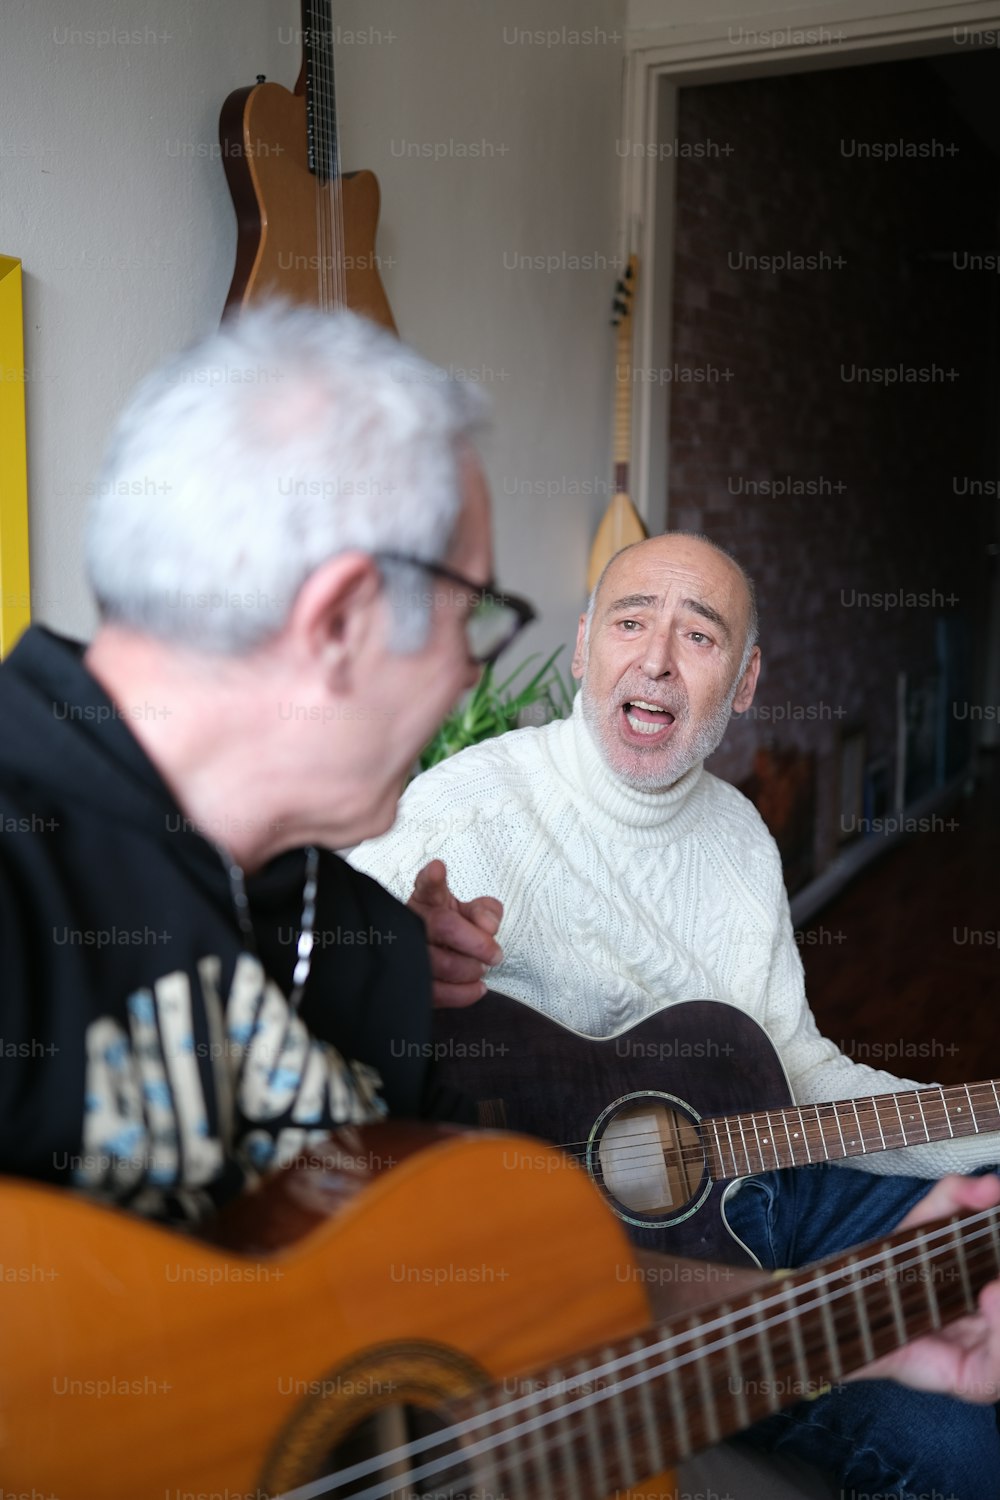 Ein Mann spielt Gitarre, während ein anderer Mann zuschaut